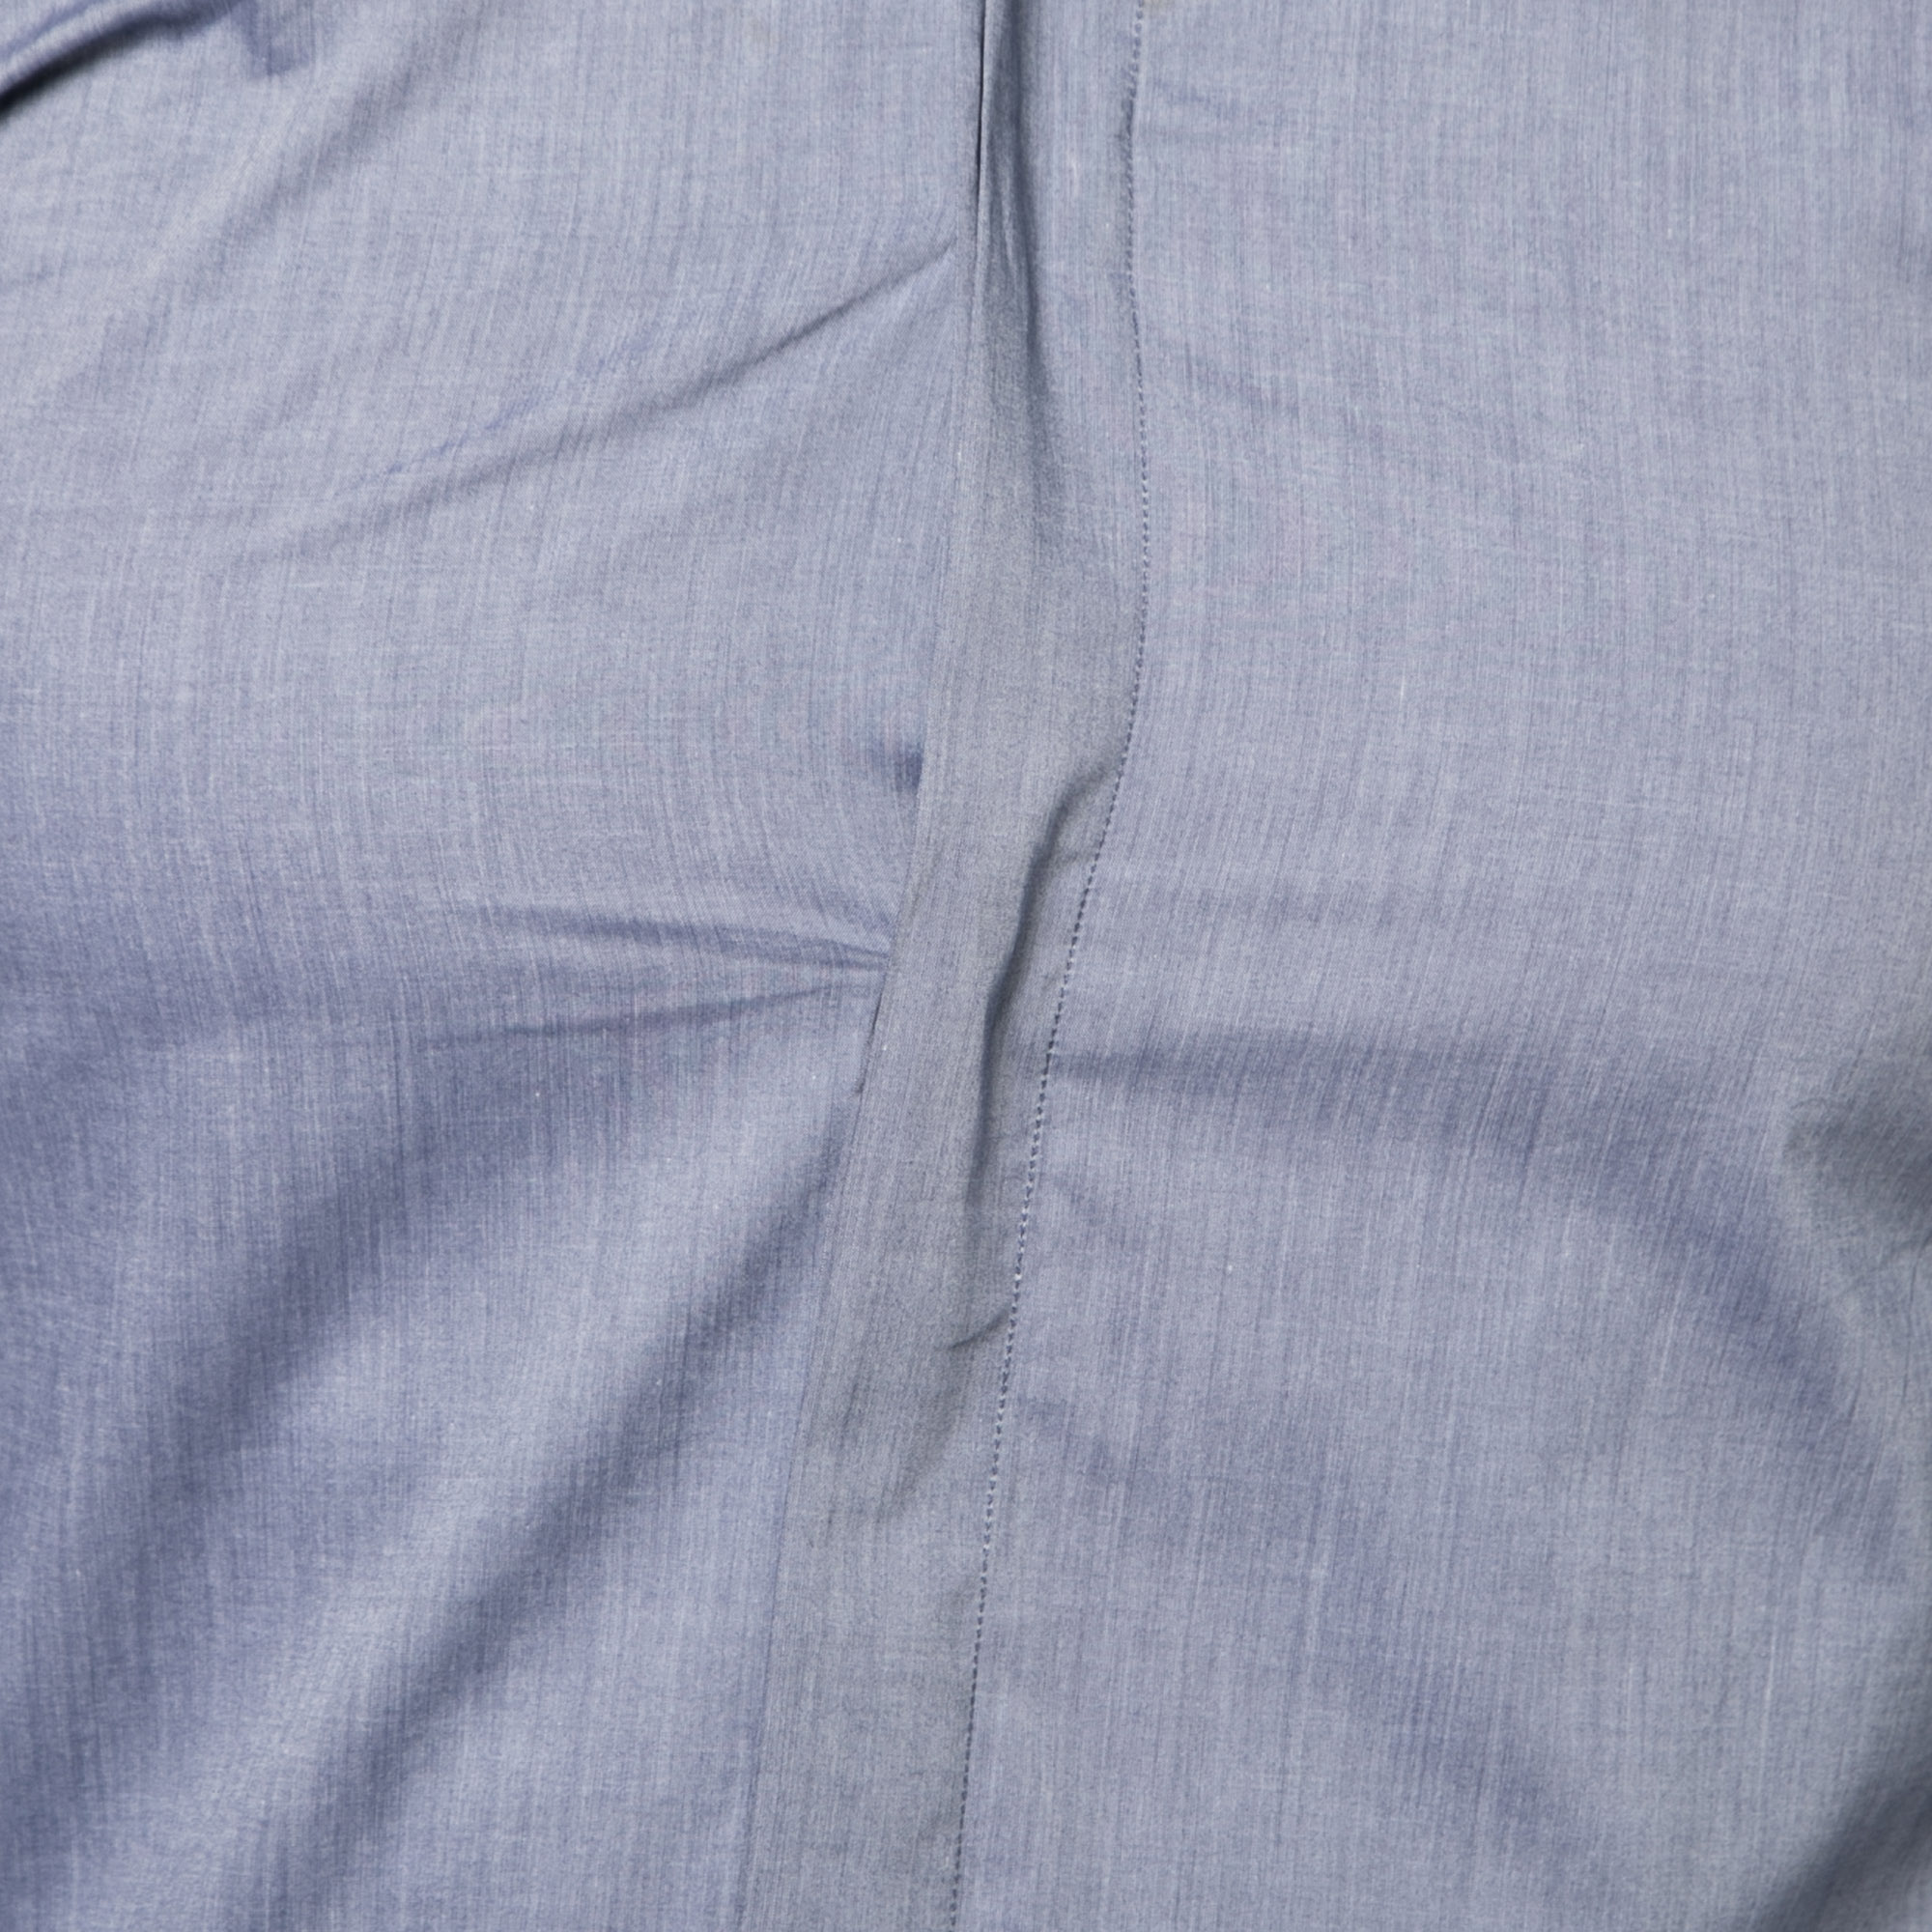 Dior Blue Cotton Button Front Shirt S